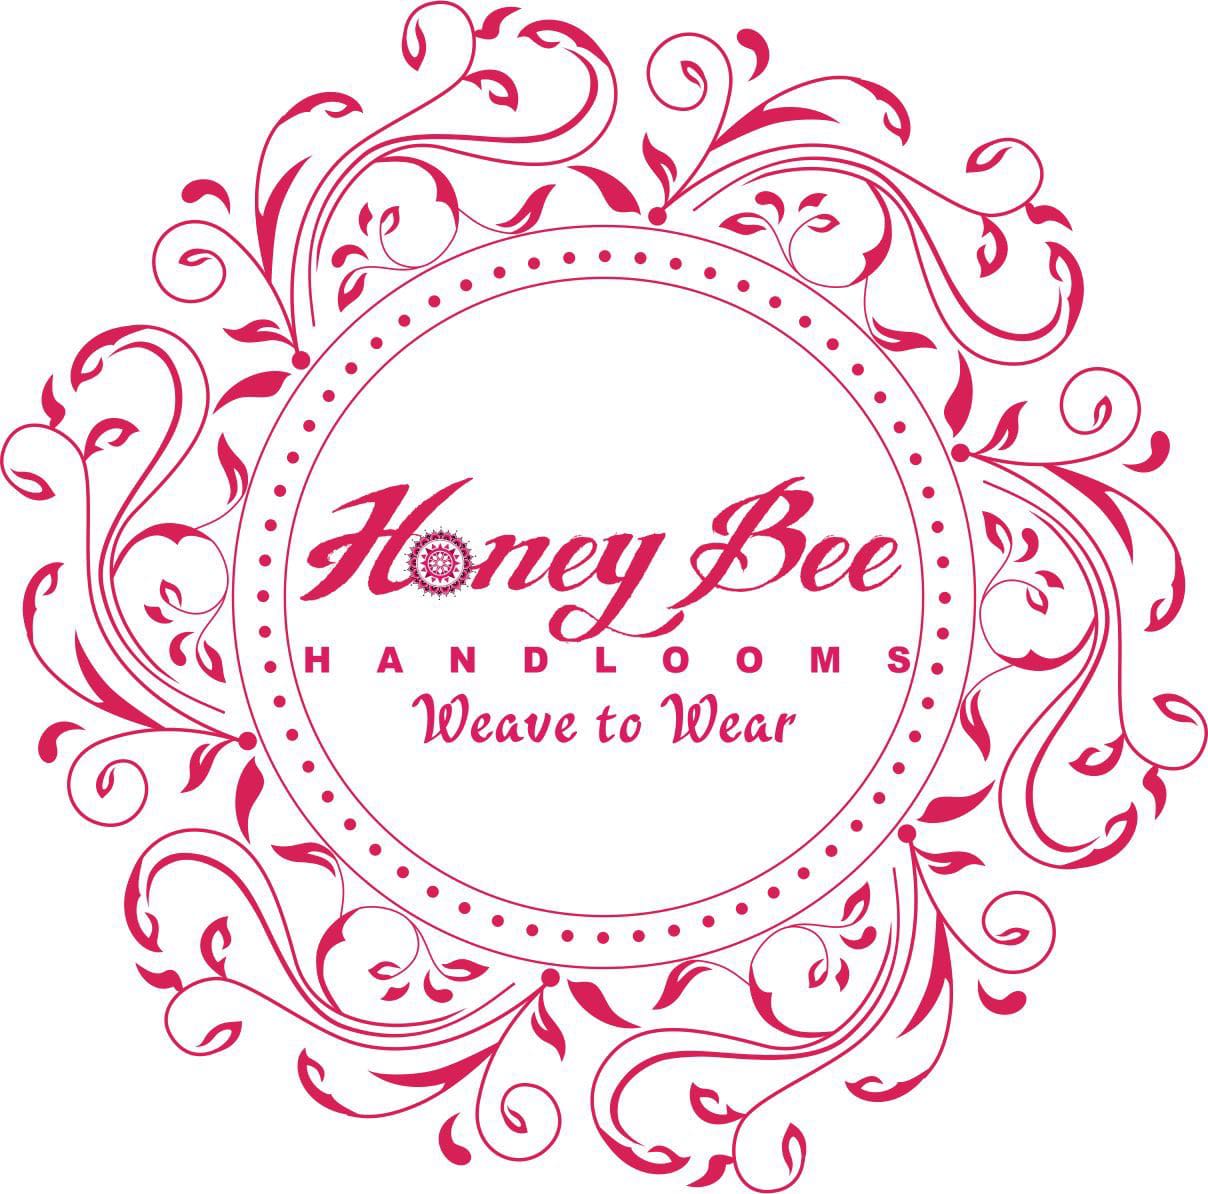 HoneyBee Handlooms